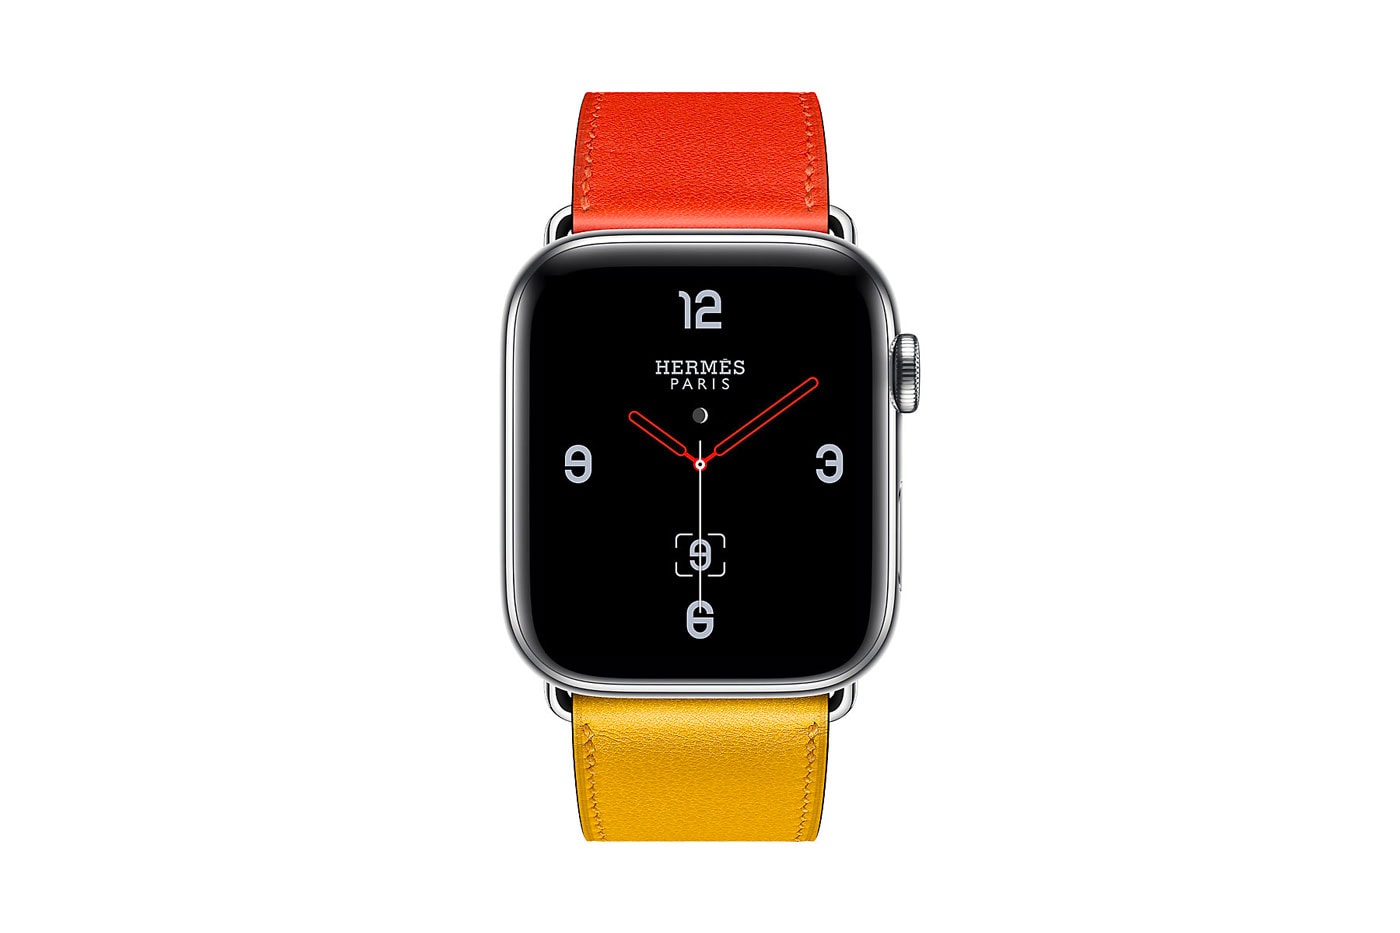 Hermès Apple Watch Series 4 Straps 2018 price colors new leather premium tech accessory luxury double tour single tour 